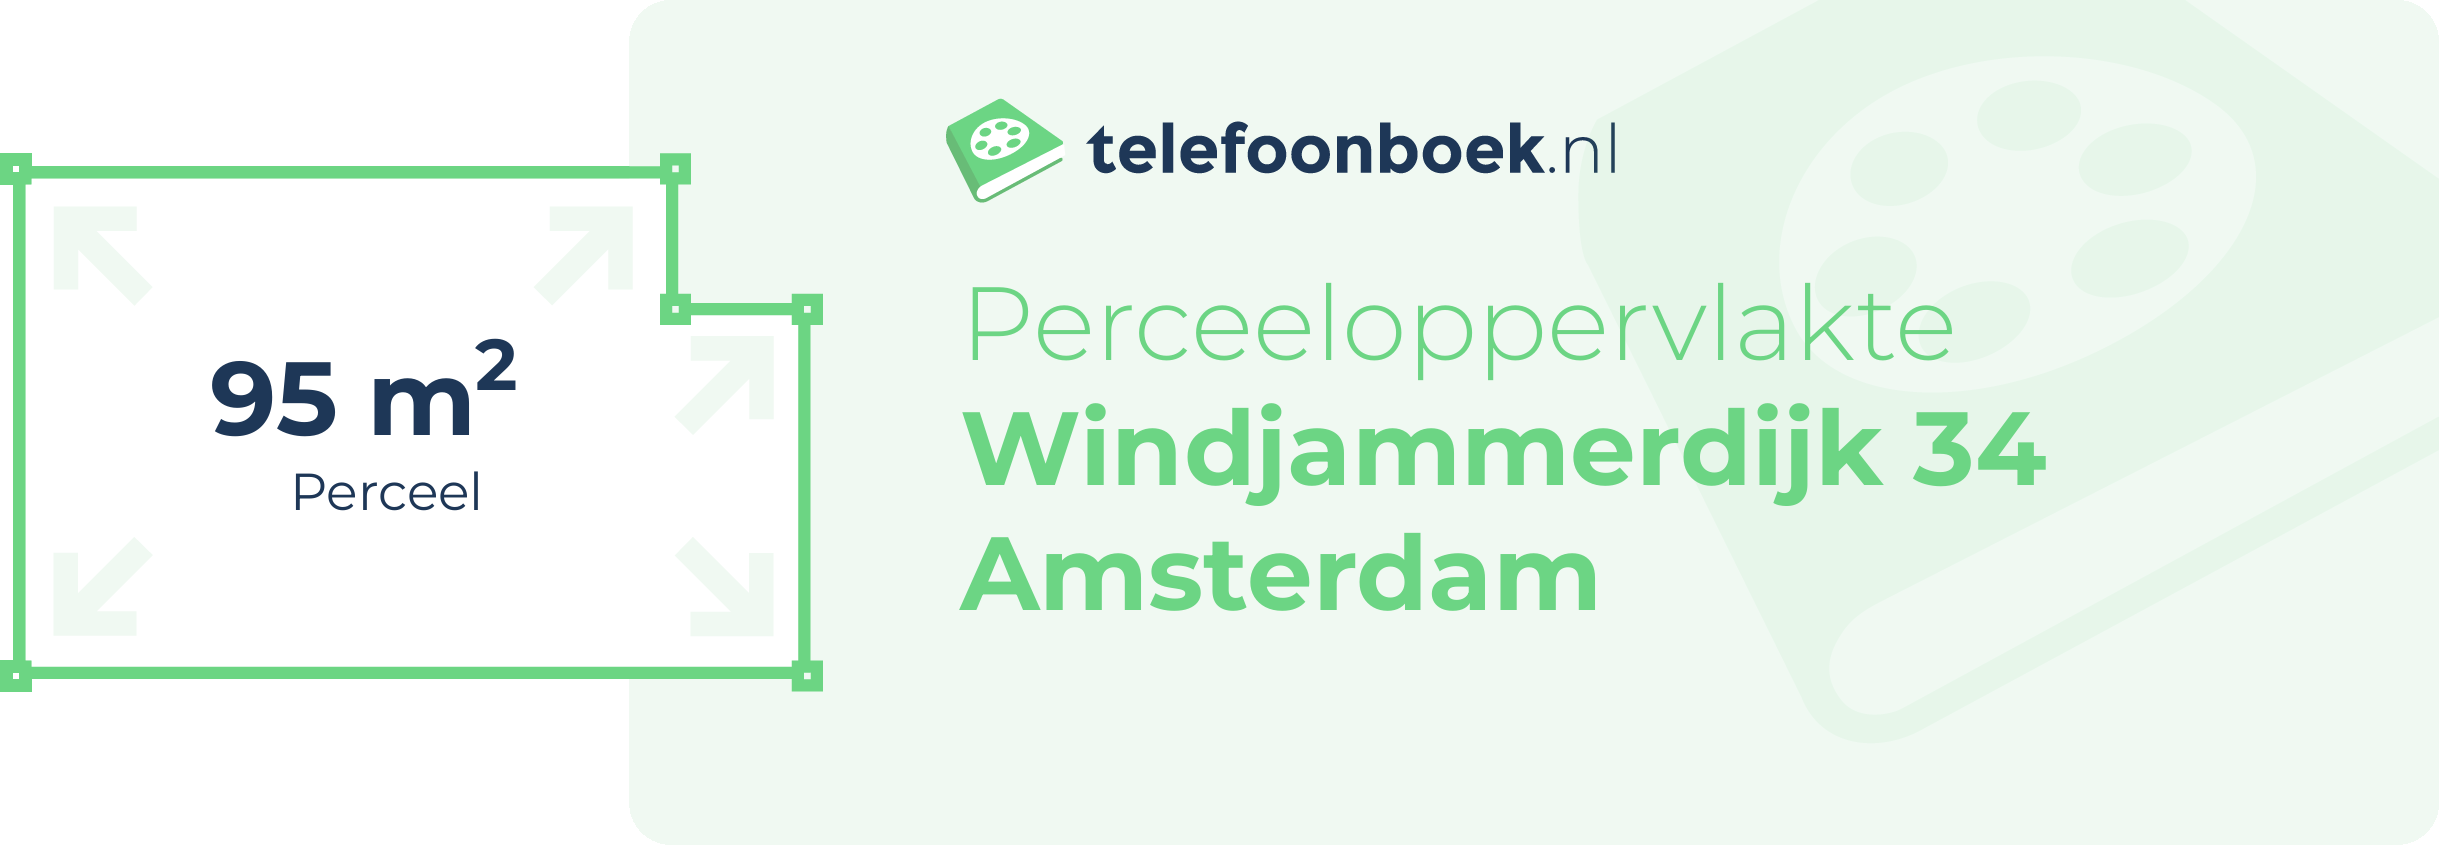 Perceeloppervlakte Windjammerdijk 34 Amsterdam